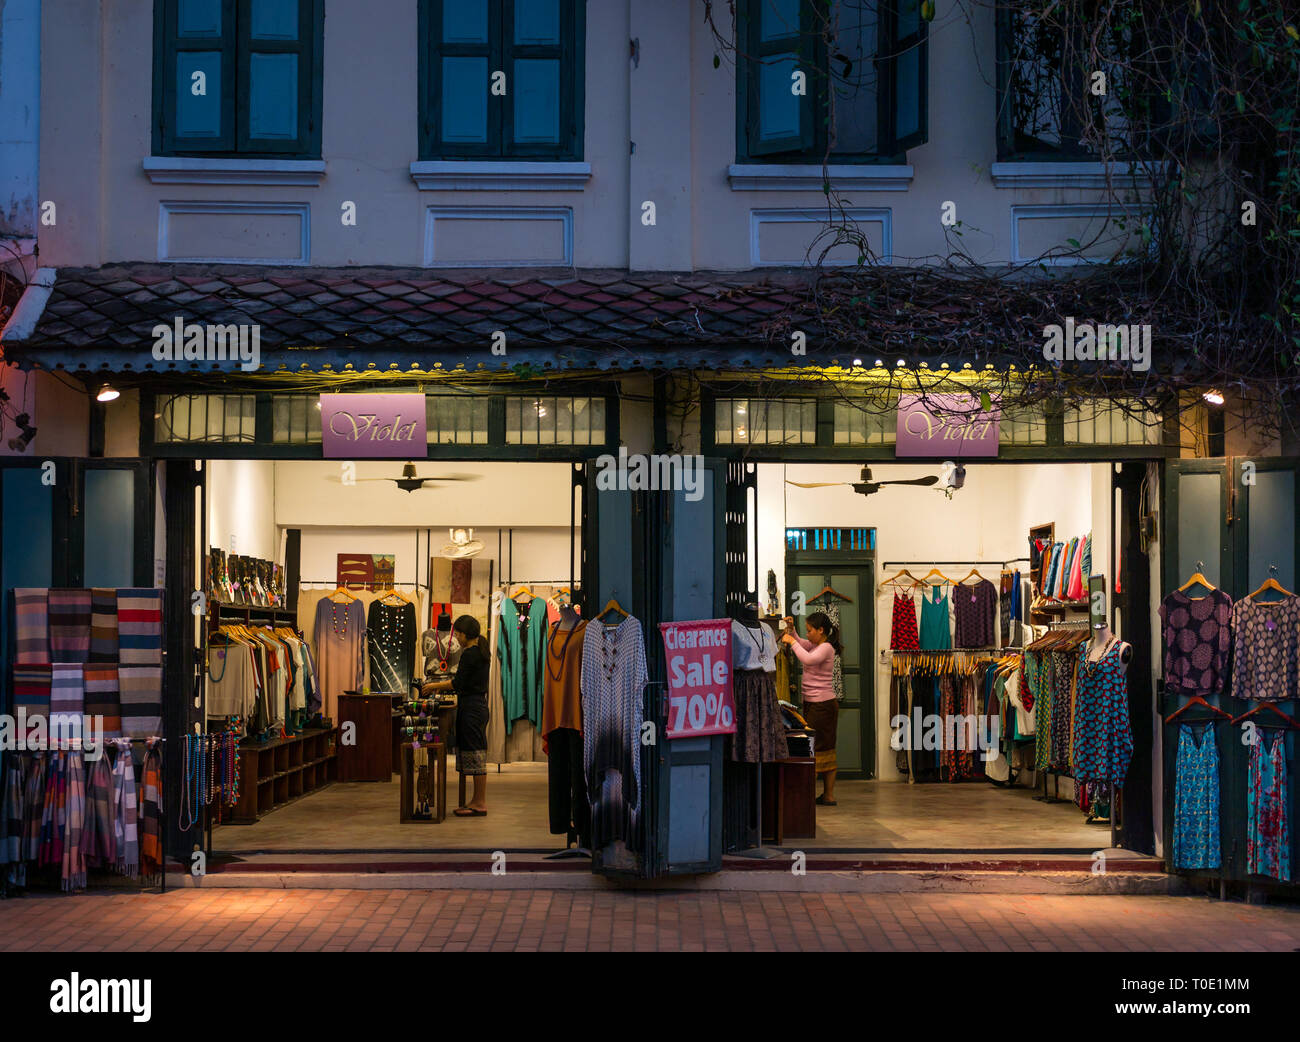 Negozio di abbigliamento donna chiamato Violet che vende abiti, scialli e gioielli aperti di notte offrendo la vendita fino al 70% di sconto, Luang Prabang, Laos, se Asia Foto Stock